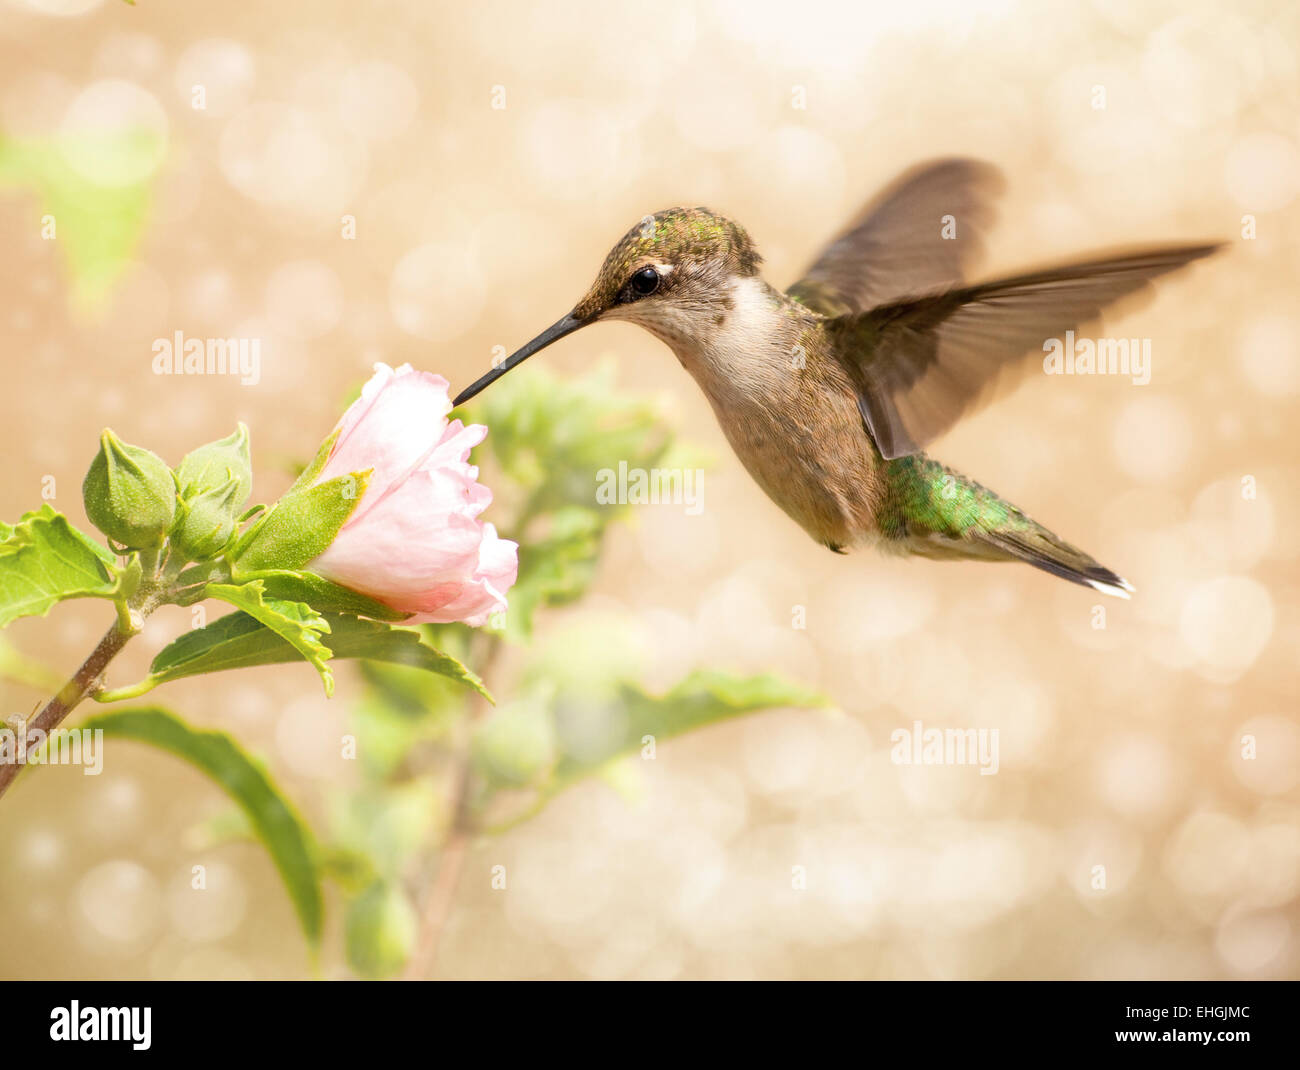 Immagine da sogno di un giovane maschio Hummingbird alimentazione su una luce rosa Althea flower Foto Stock